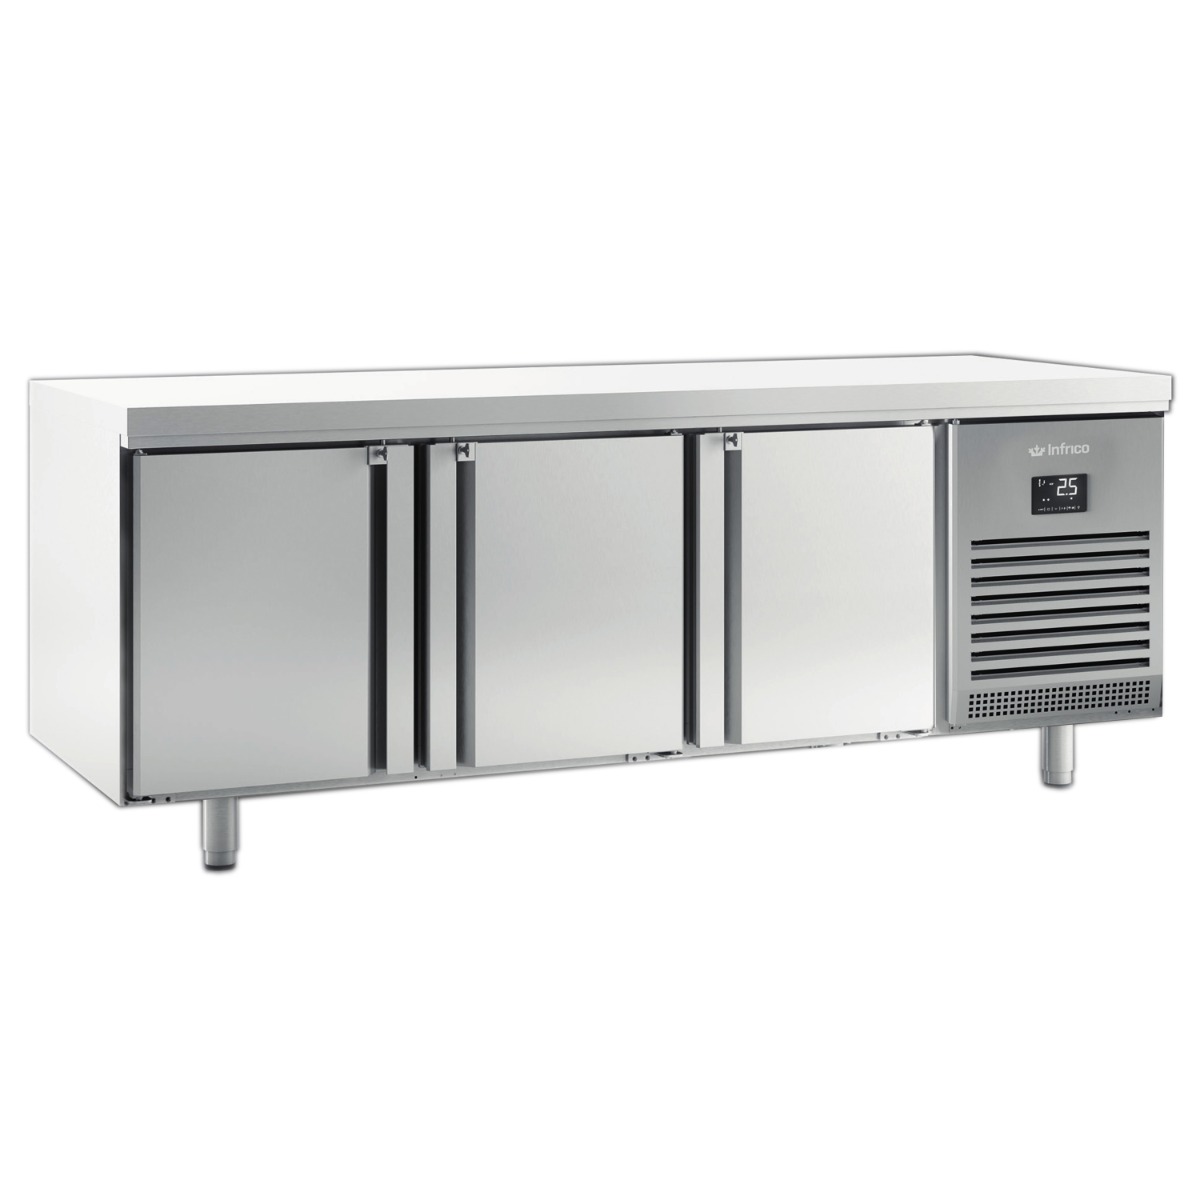 INFRICO 3 Door 800mm Depth Freezer Counter 625L - MR2190BT